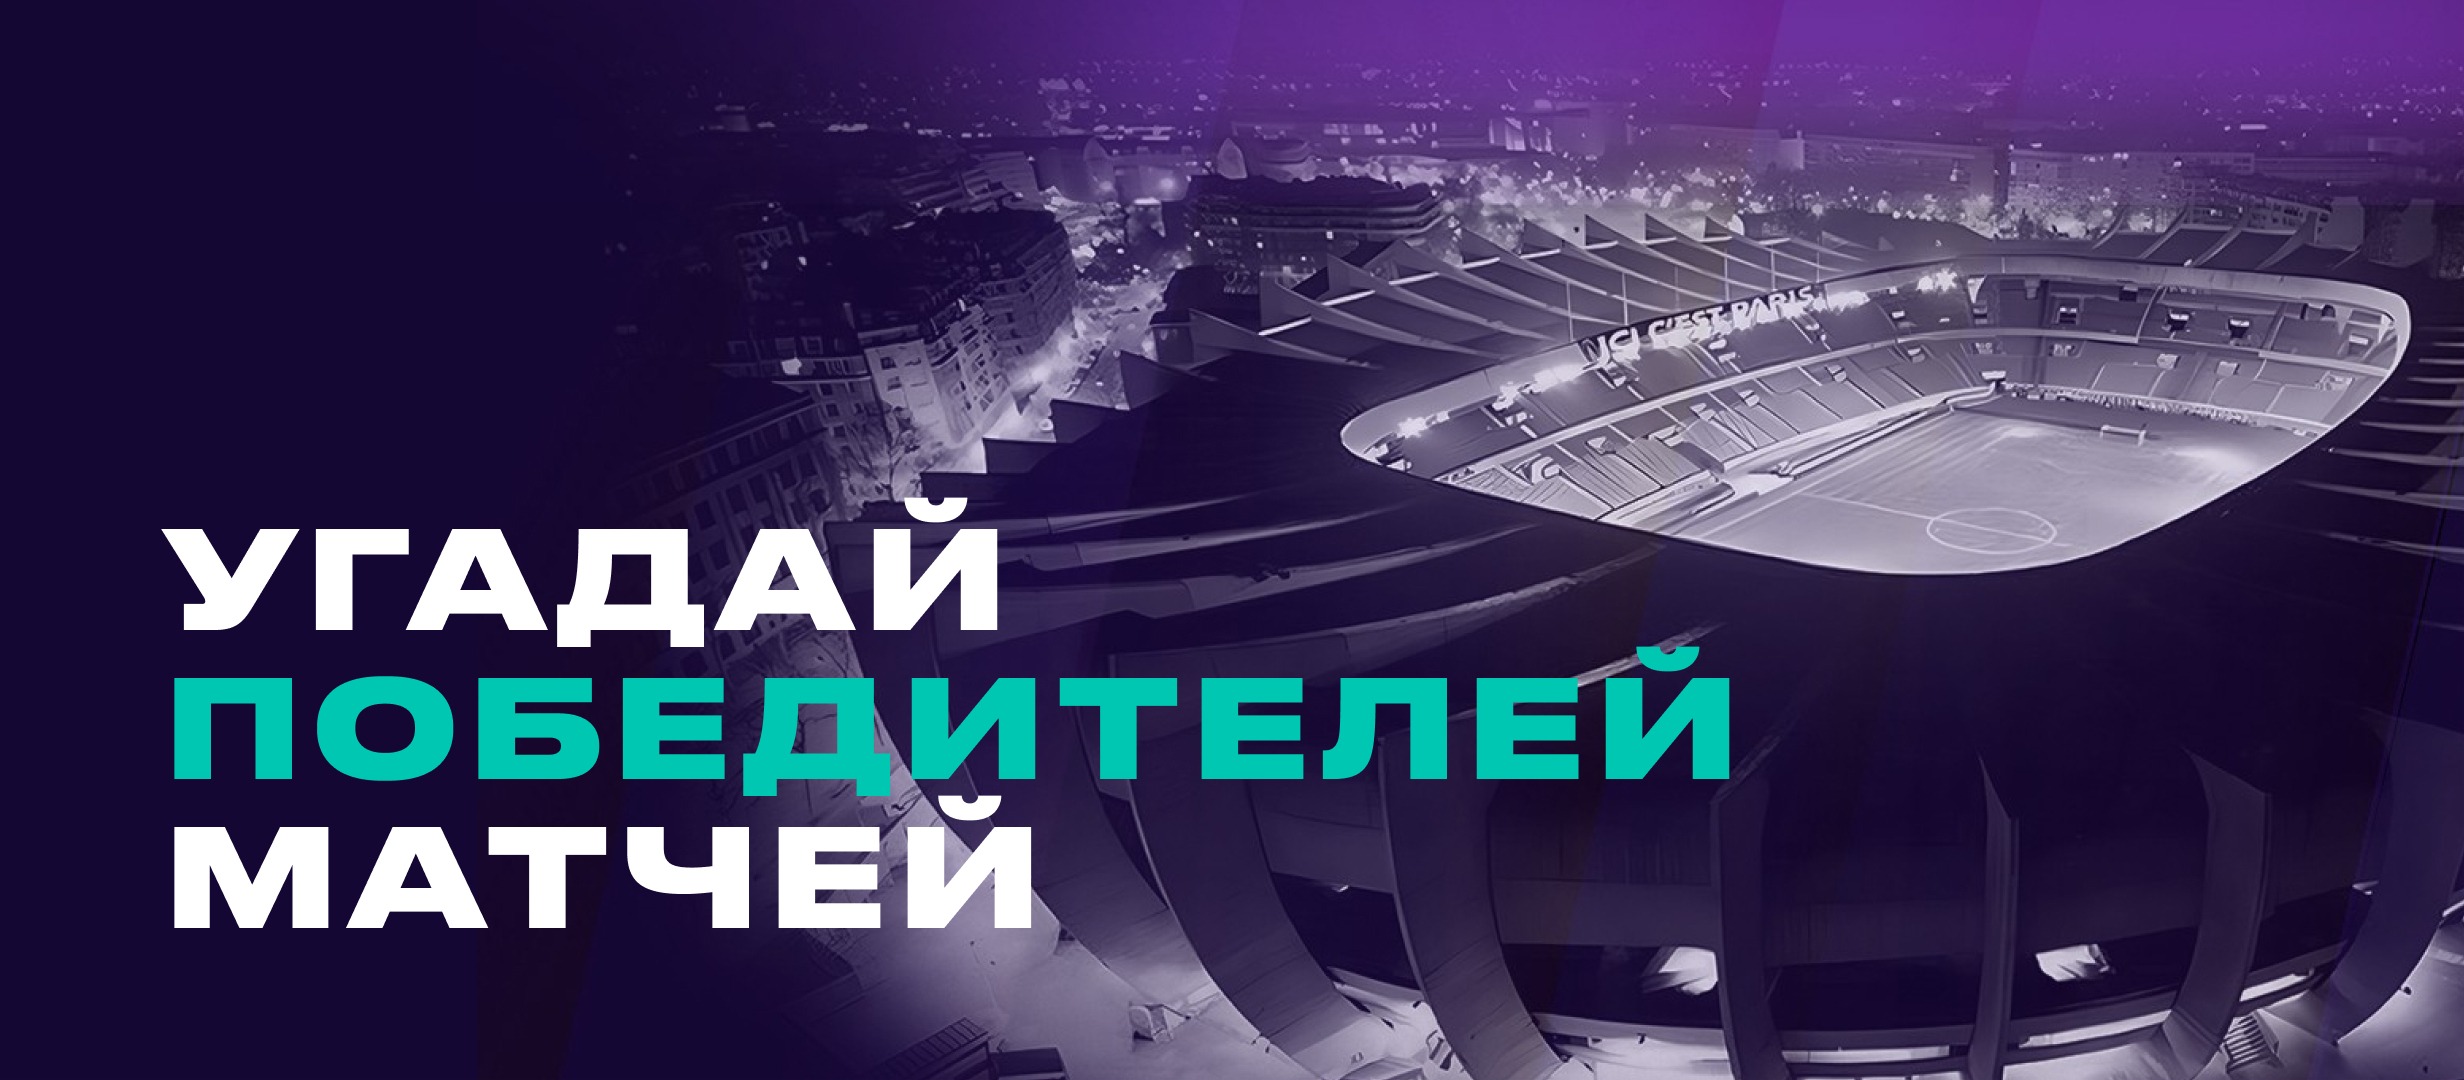 BK Pari razygryvaet 1 200 000 rublej v konkurse prognozov na matchi Ligi CHempionov